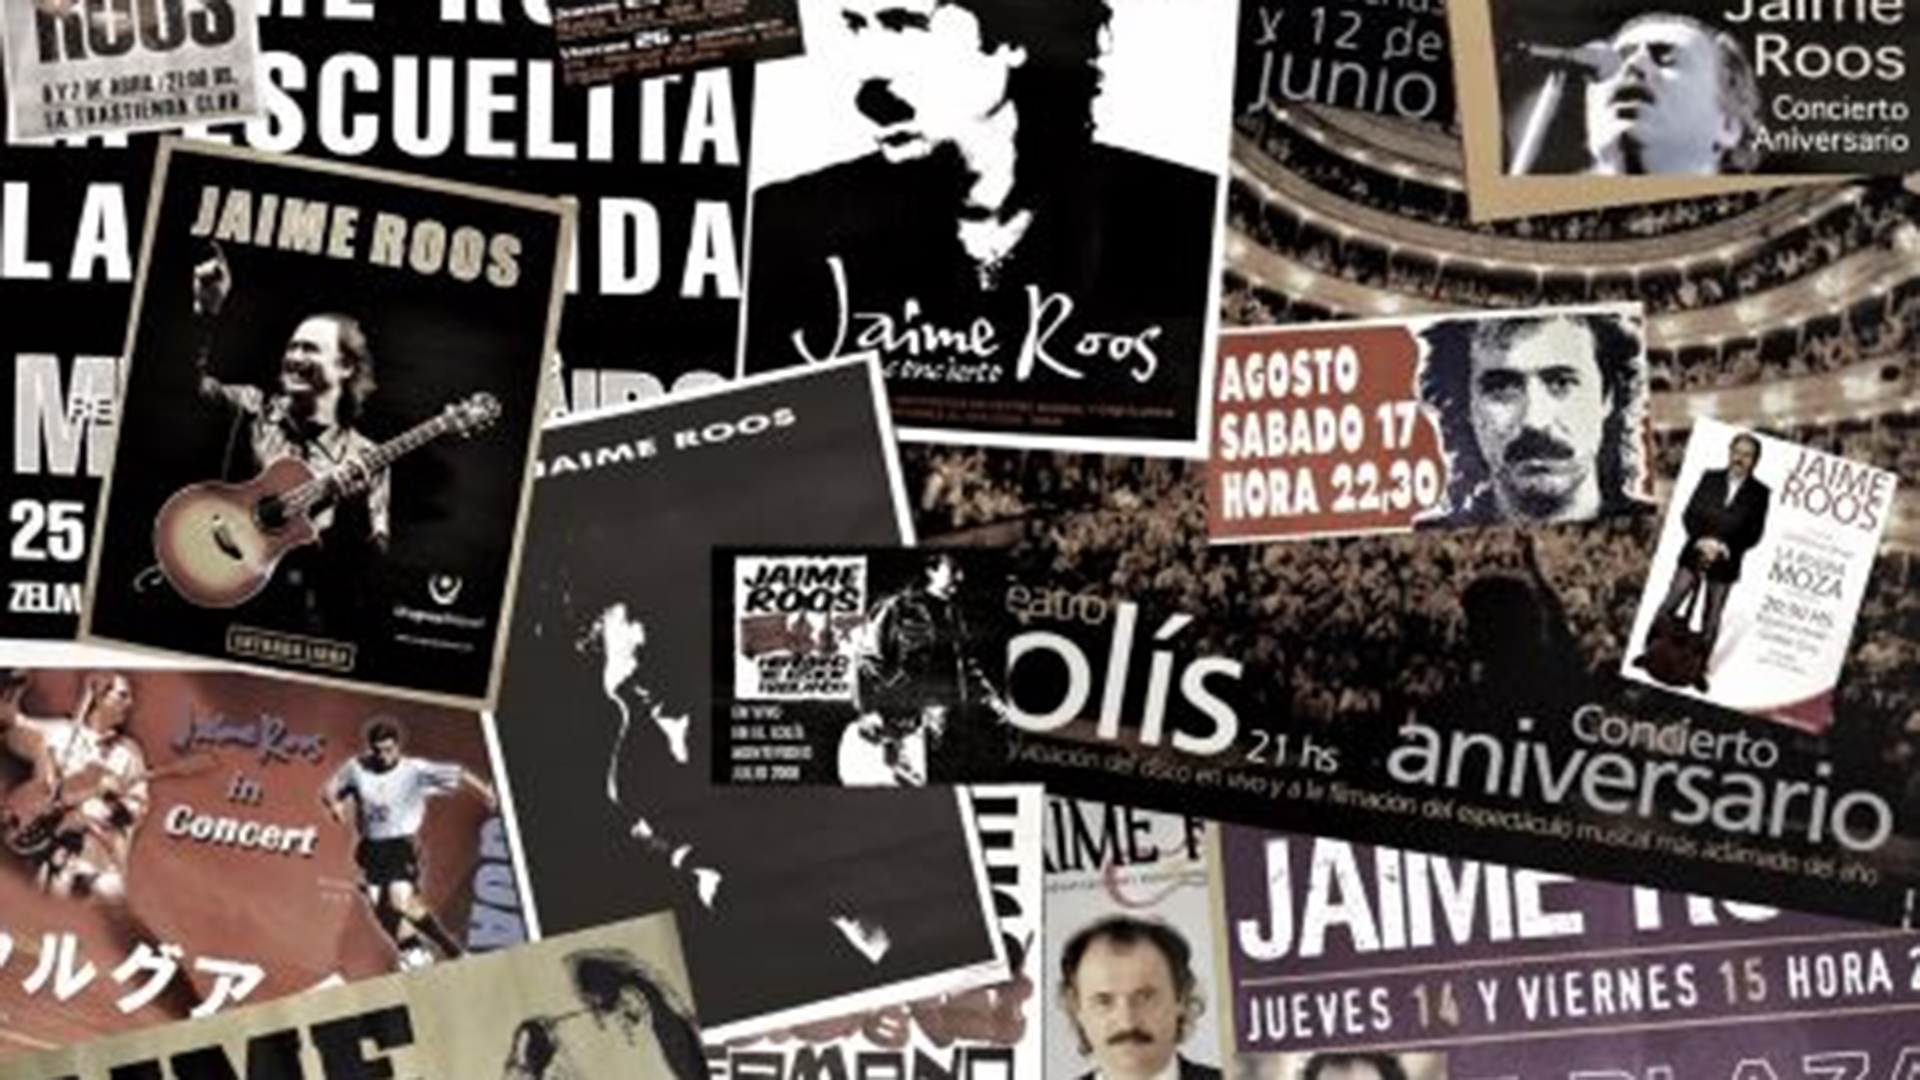 Jaime Roos también tocará en Santa Fe (ATE Casa España, 27 de junio), Rosario (Teatro El Círculo, 29 de junio) y Córdoba, Plaza de la Música, 1 de julio (Diseño de collage: Sebastián Pereira y Jaime Roos - 2019)